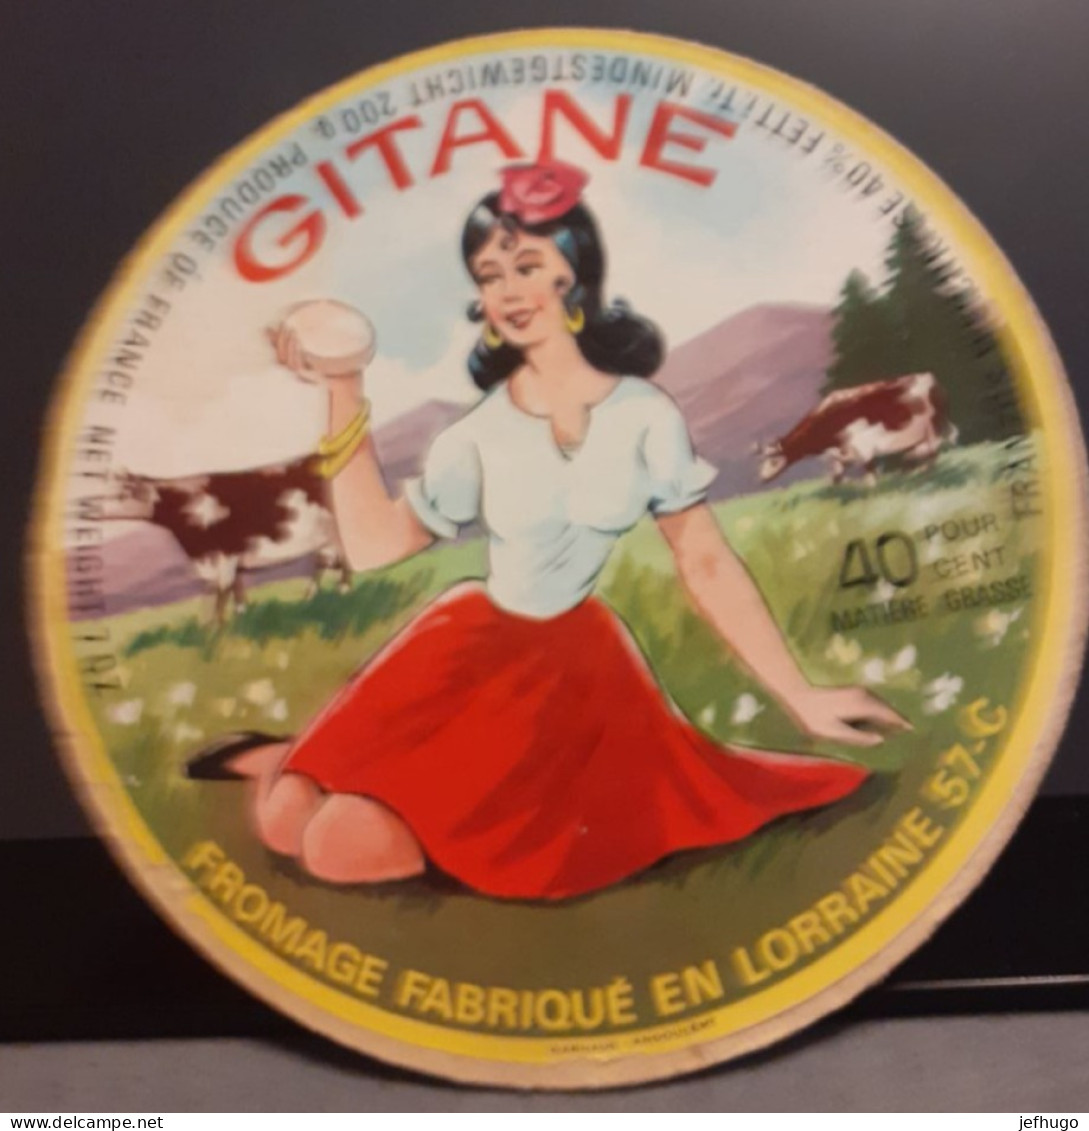 ETIQUETTE FROMAGE GITANE . FABRIQUE EN LORRAINE 57 - Käse